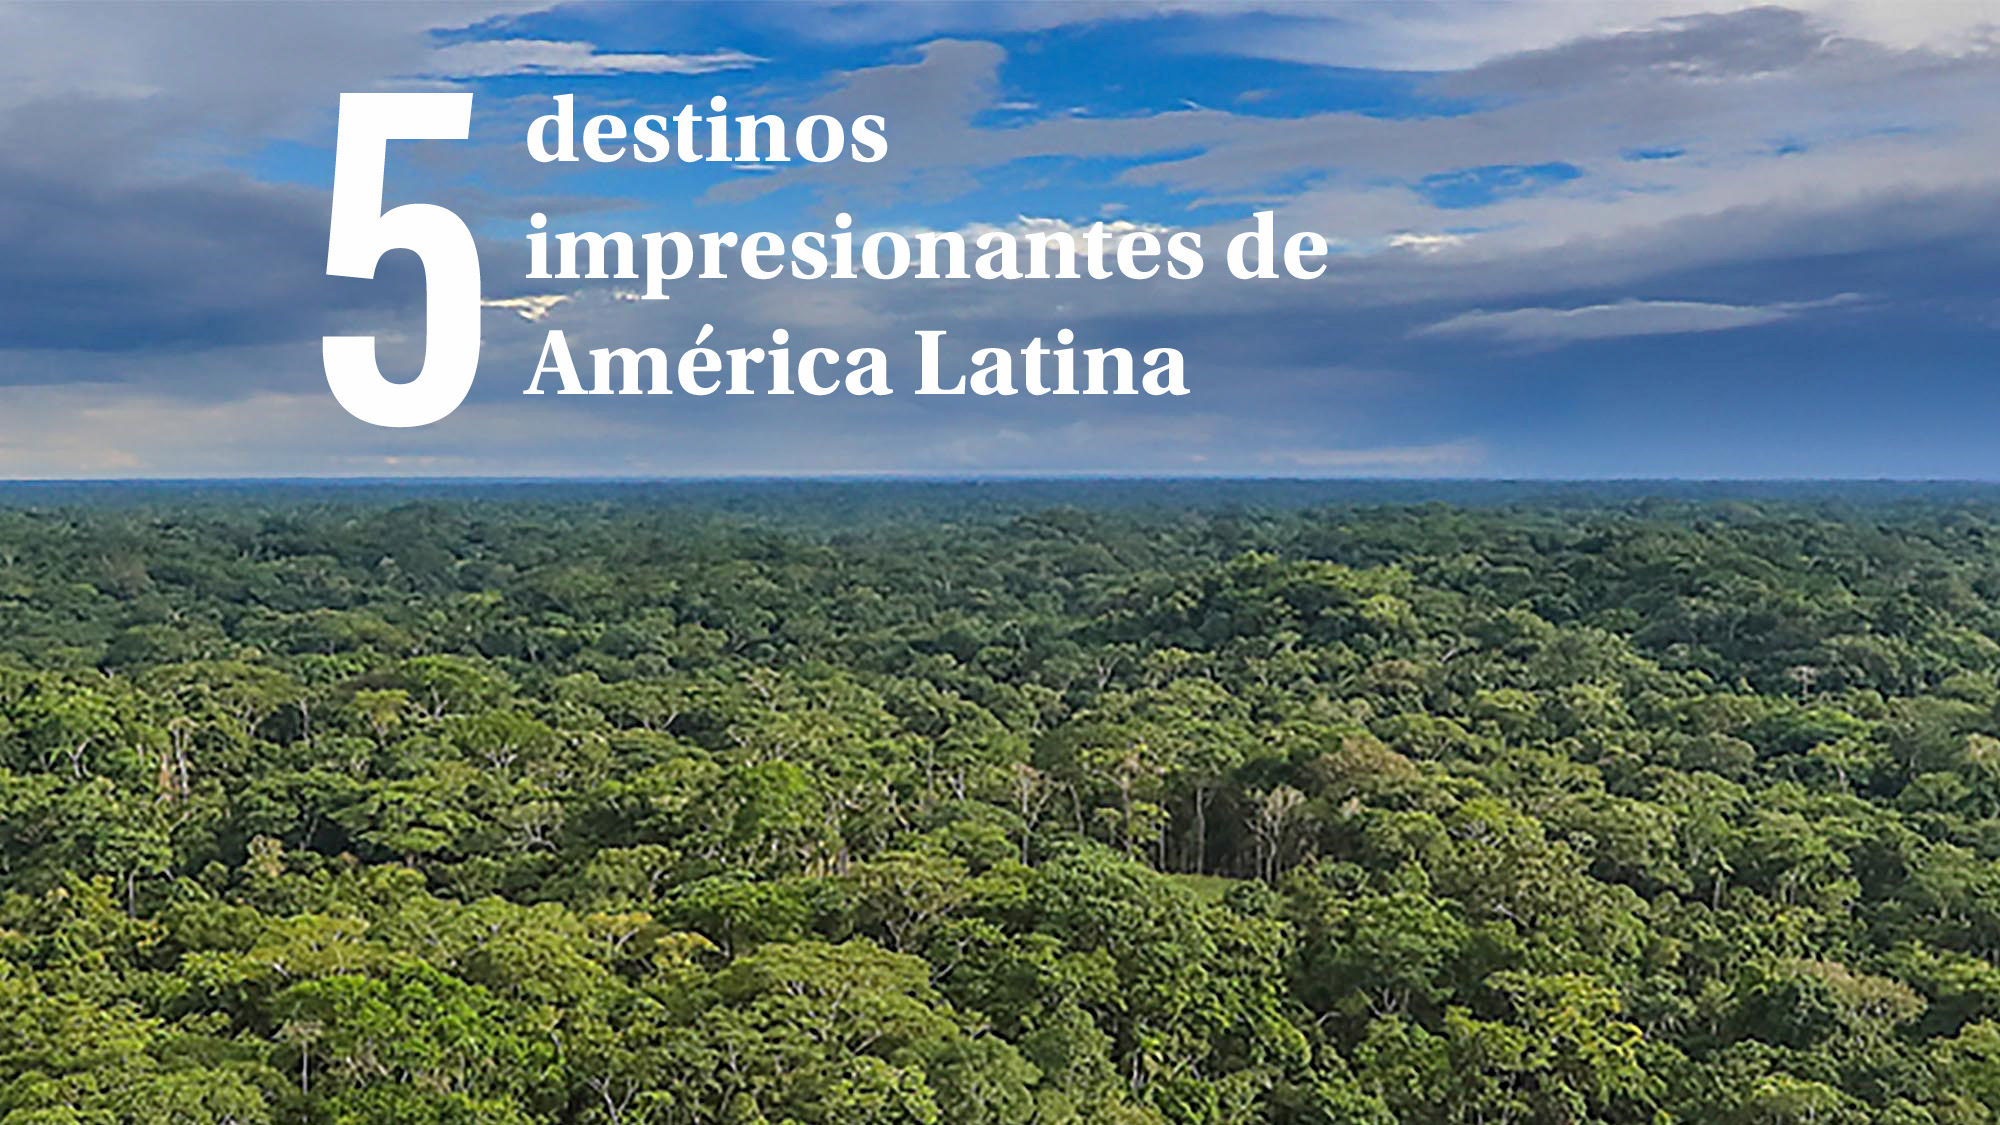 5 destinos impresionantes de América Latina